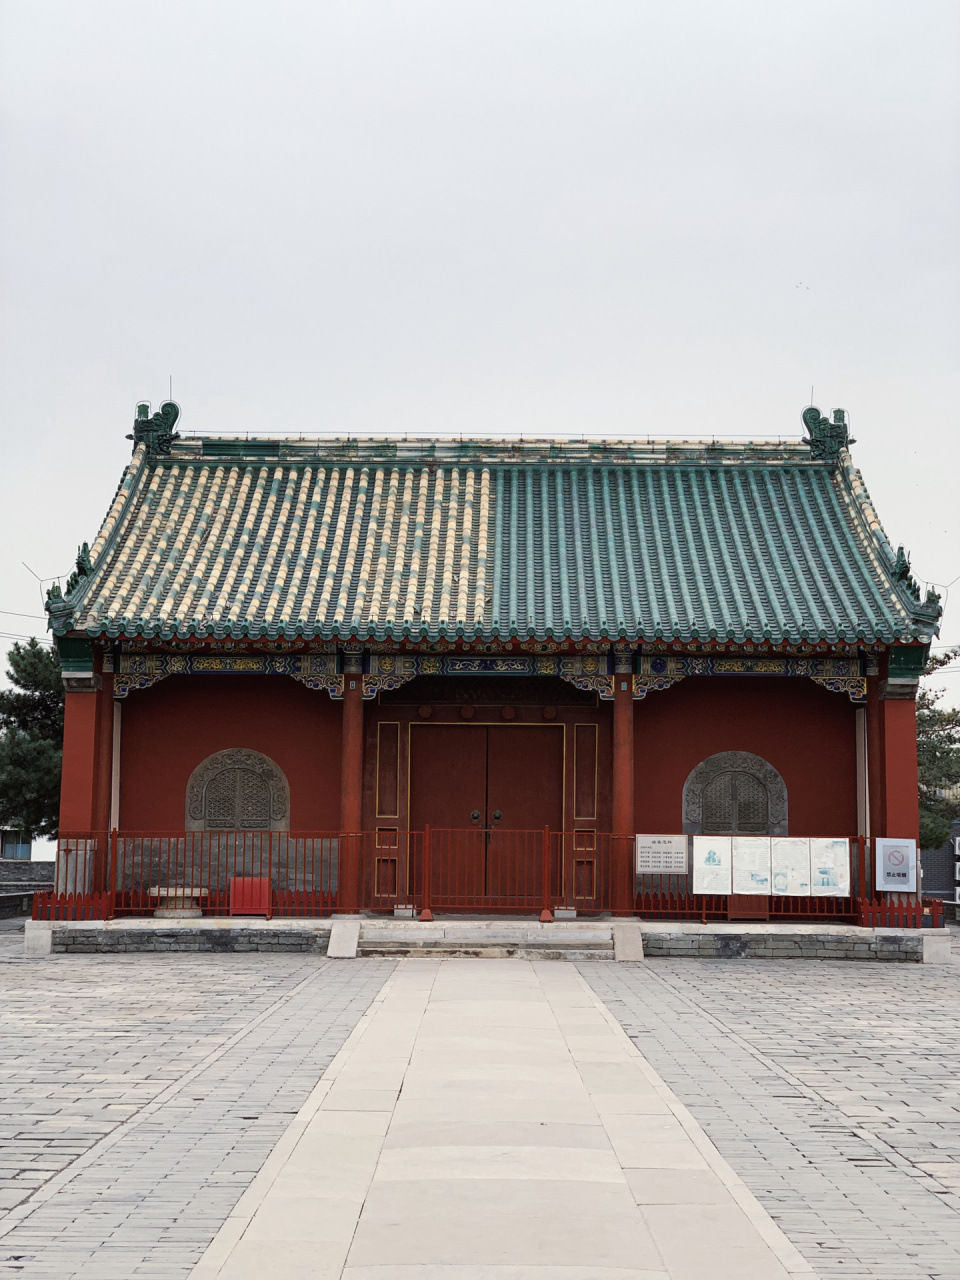 北京唯一保存完整的满族风格建筑